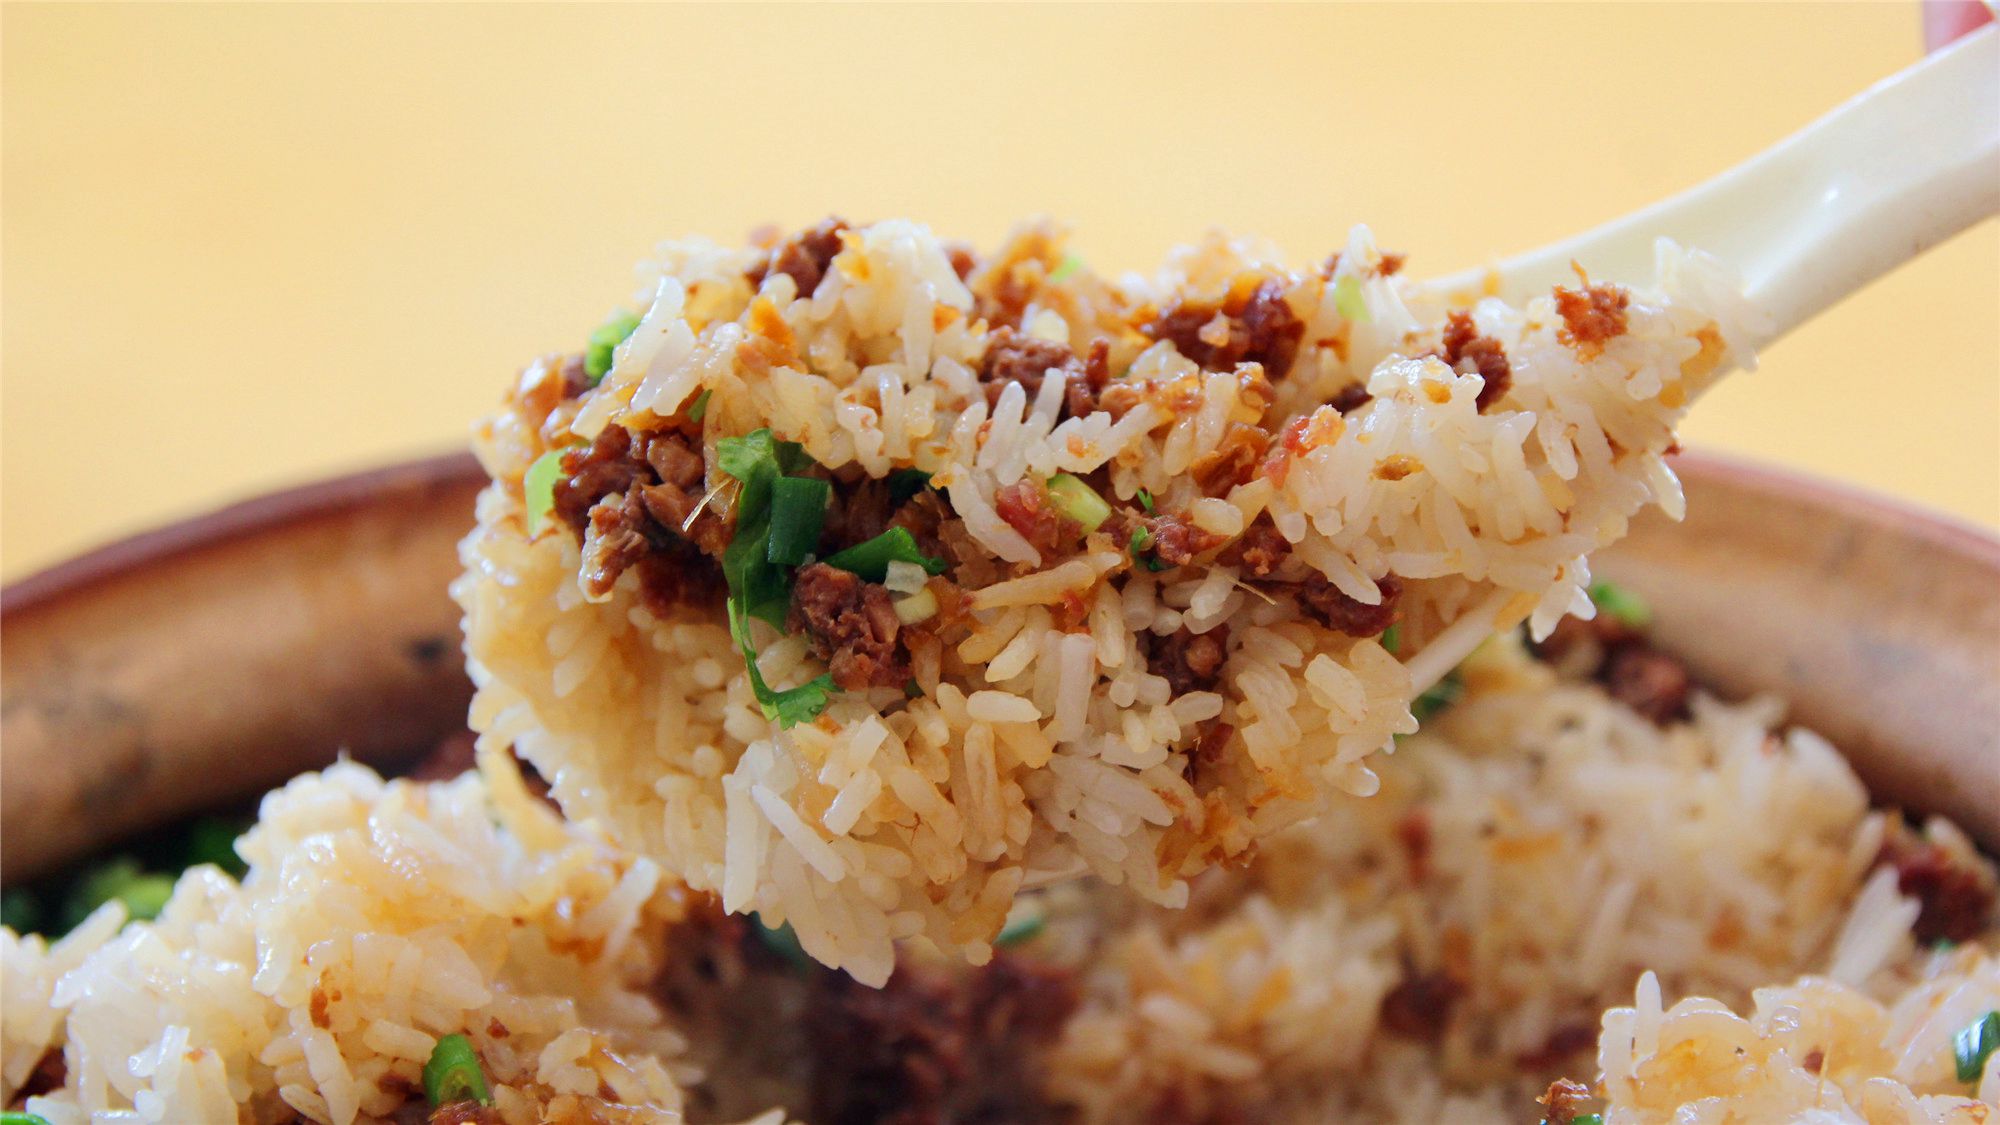 入口米饭饱满有嚼劲,先是感受到饭香和羊肉香相互交汇,然后是葱花的